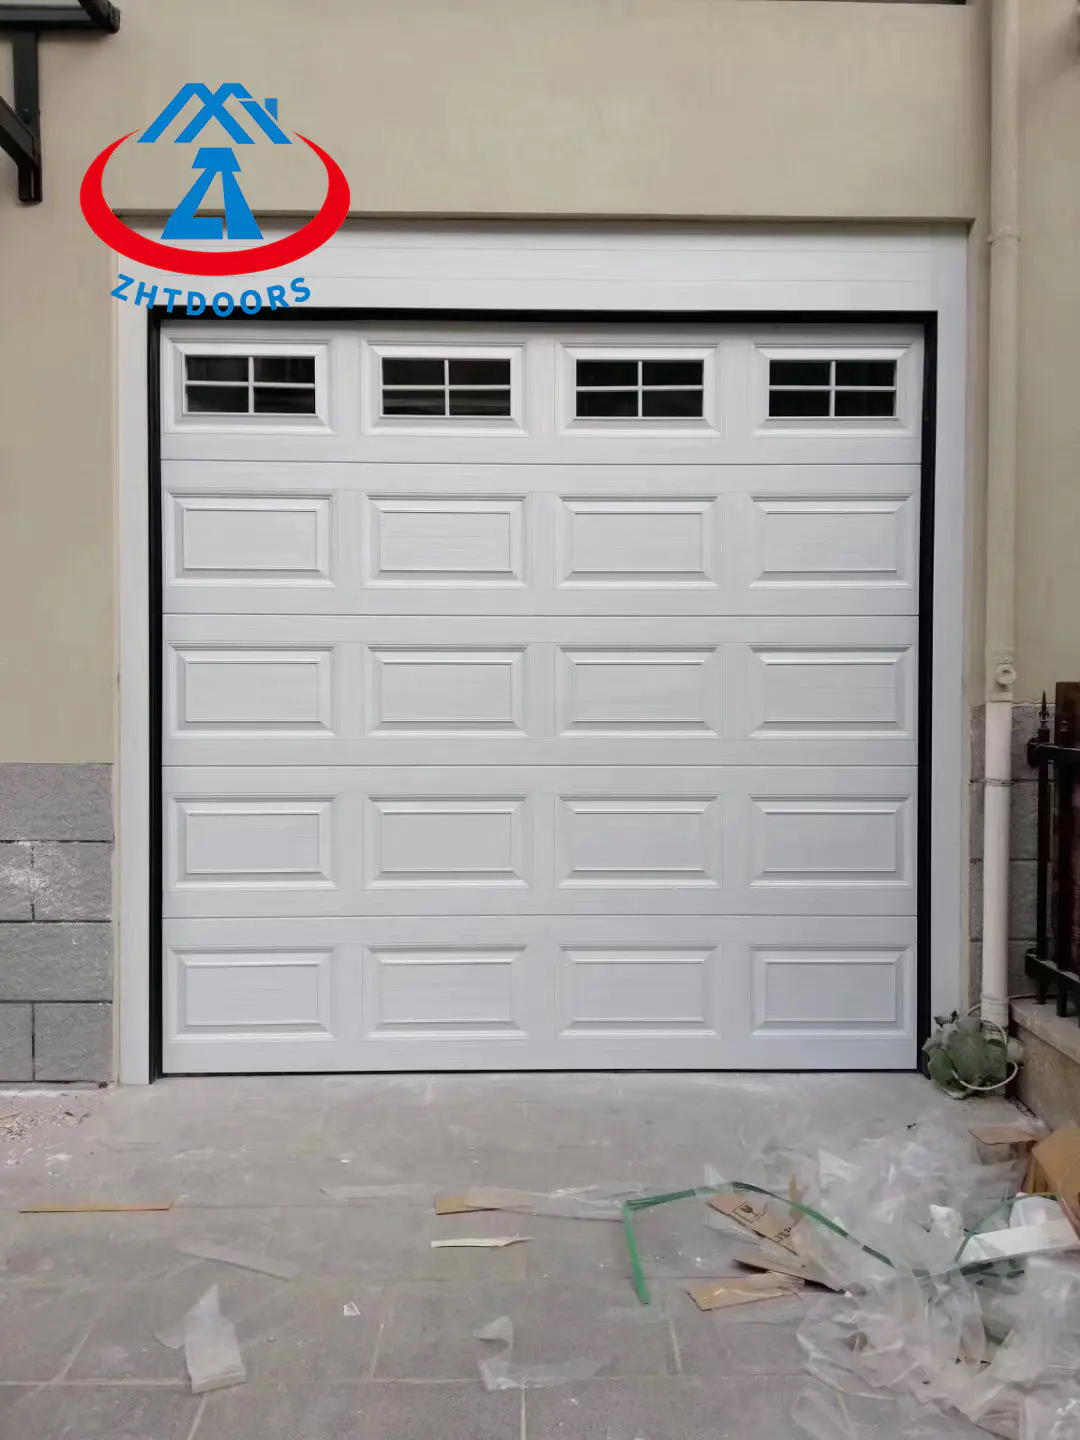 Wholesale Garage Doors Garage Doors with Window Roller Shutter Garage Door Installation